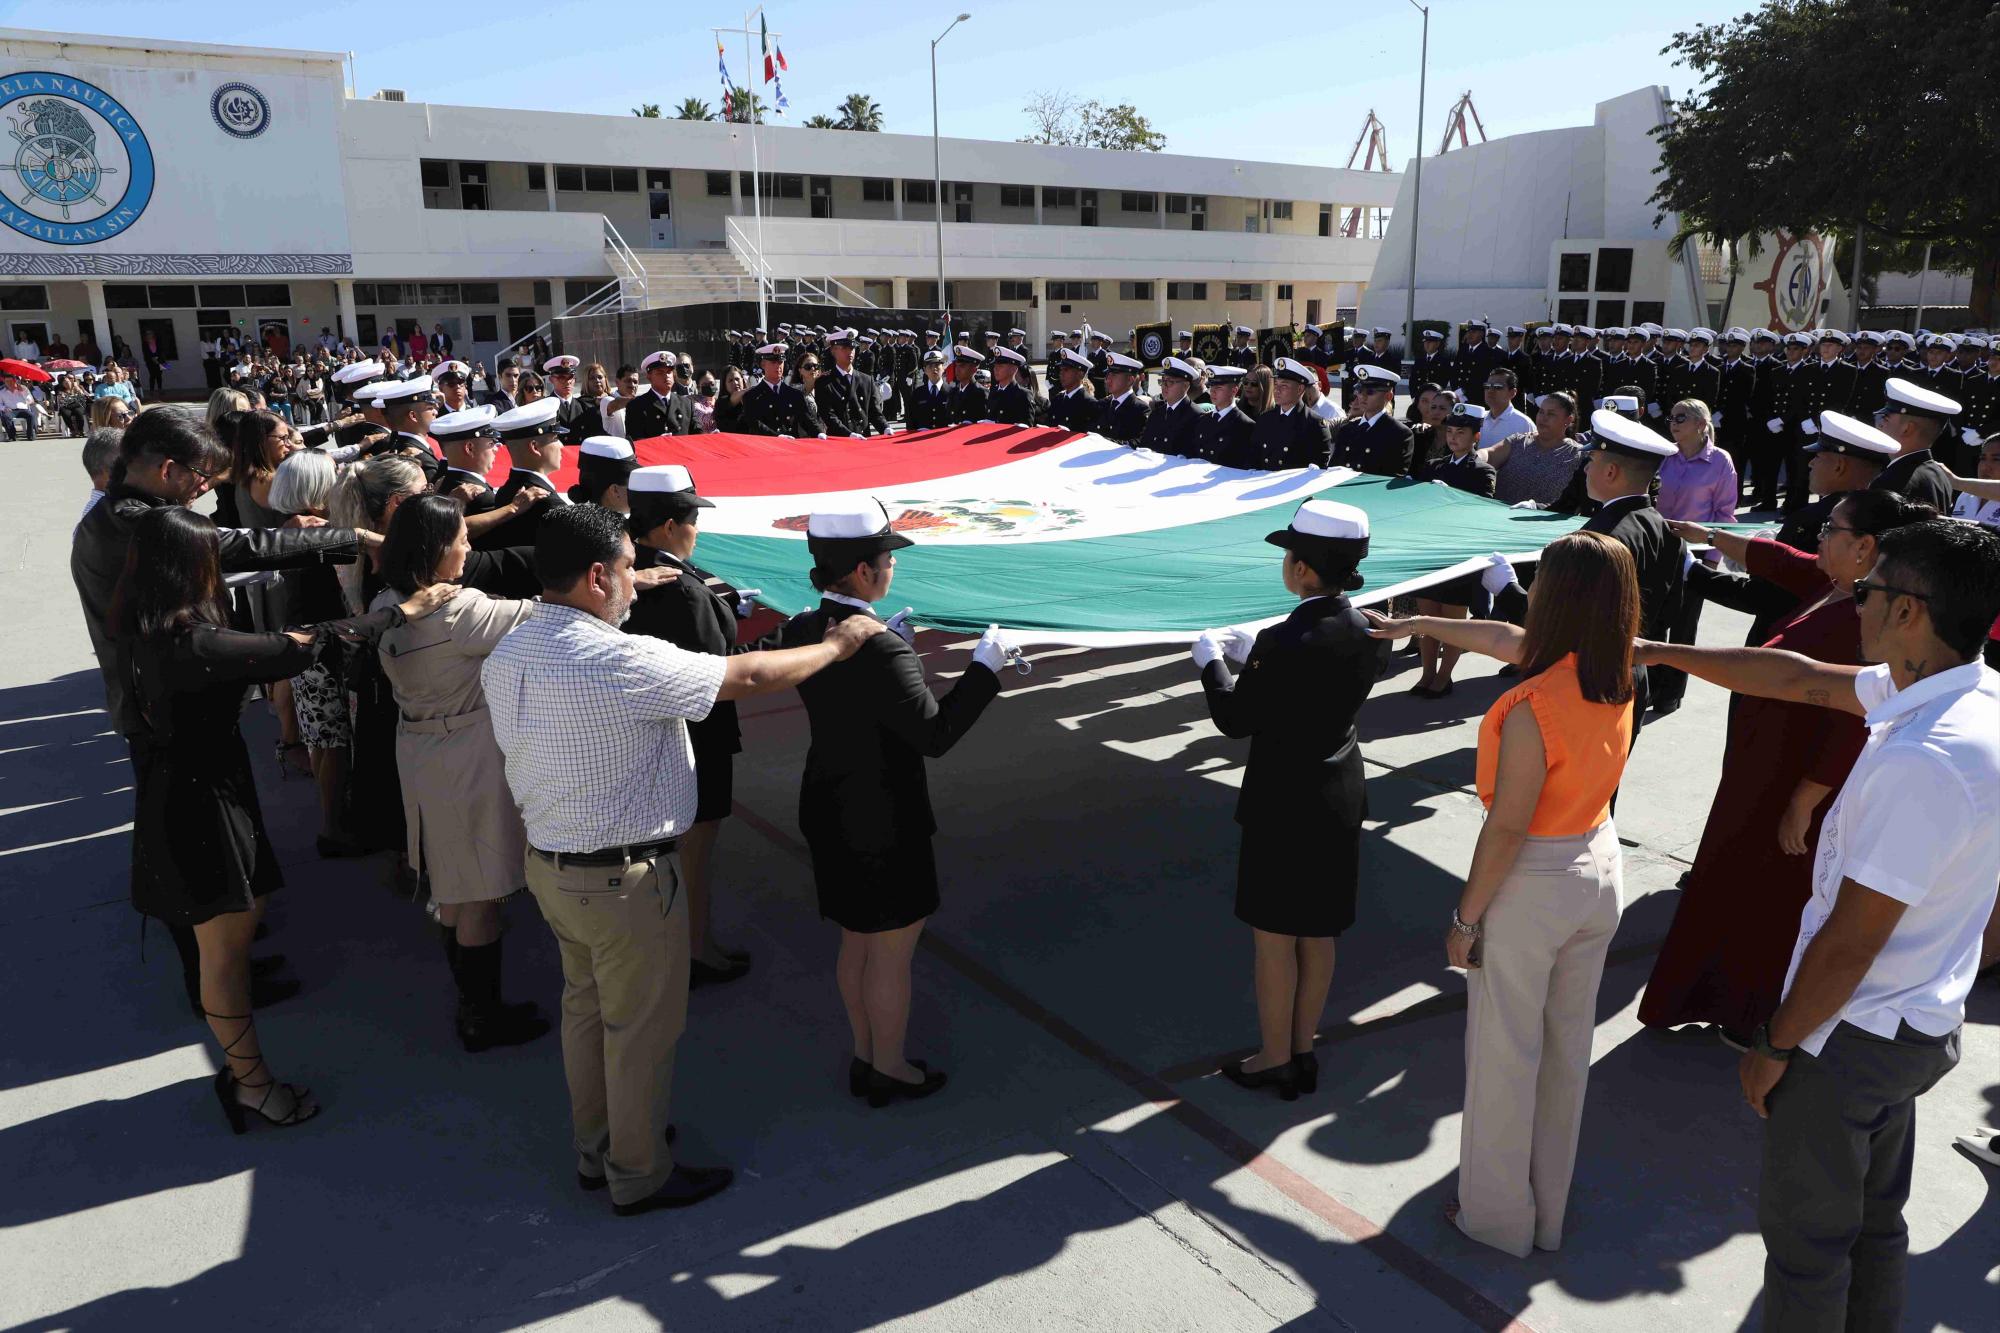 $!La ceremonia del juramento de lealtad a la Bandera Nacional se celebró en la explanada principal de la Escuela Náutica.